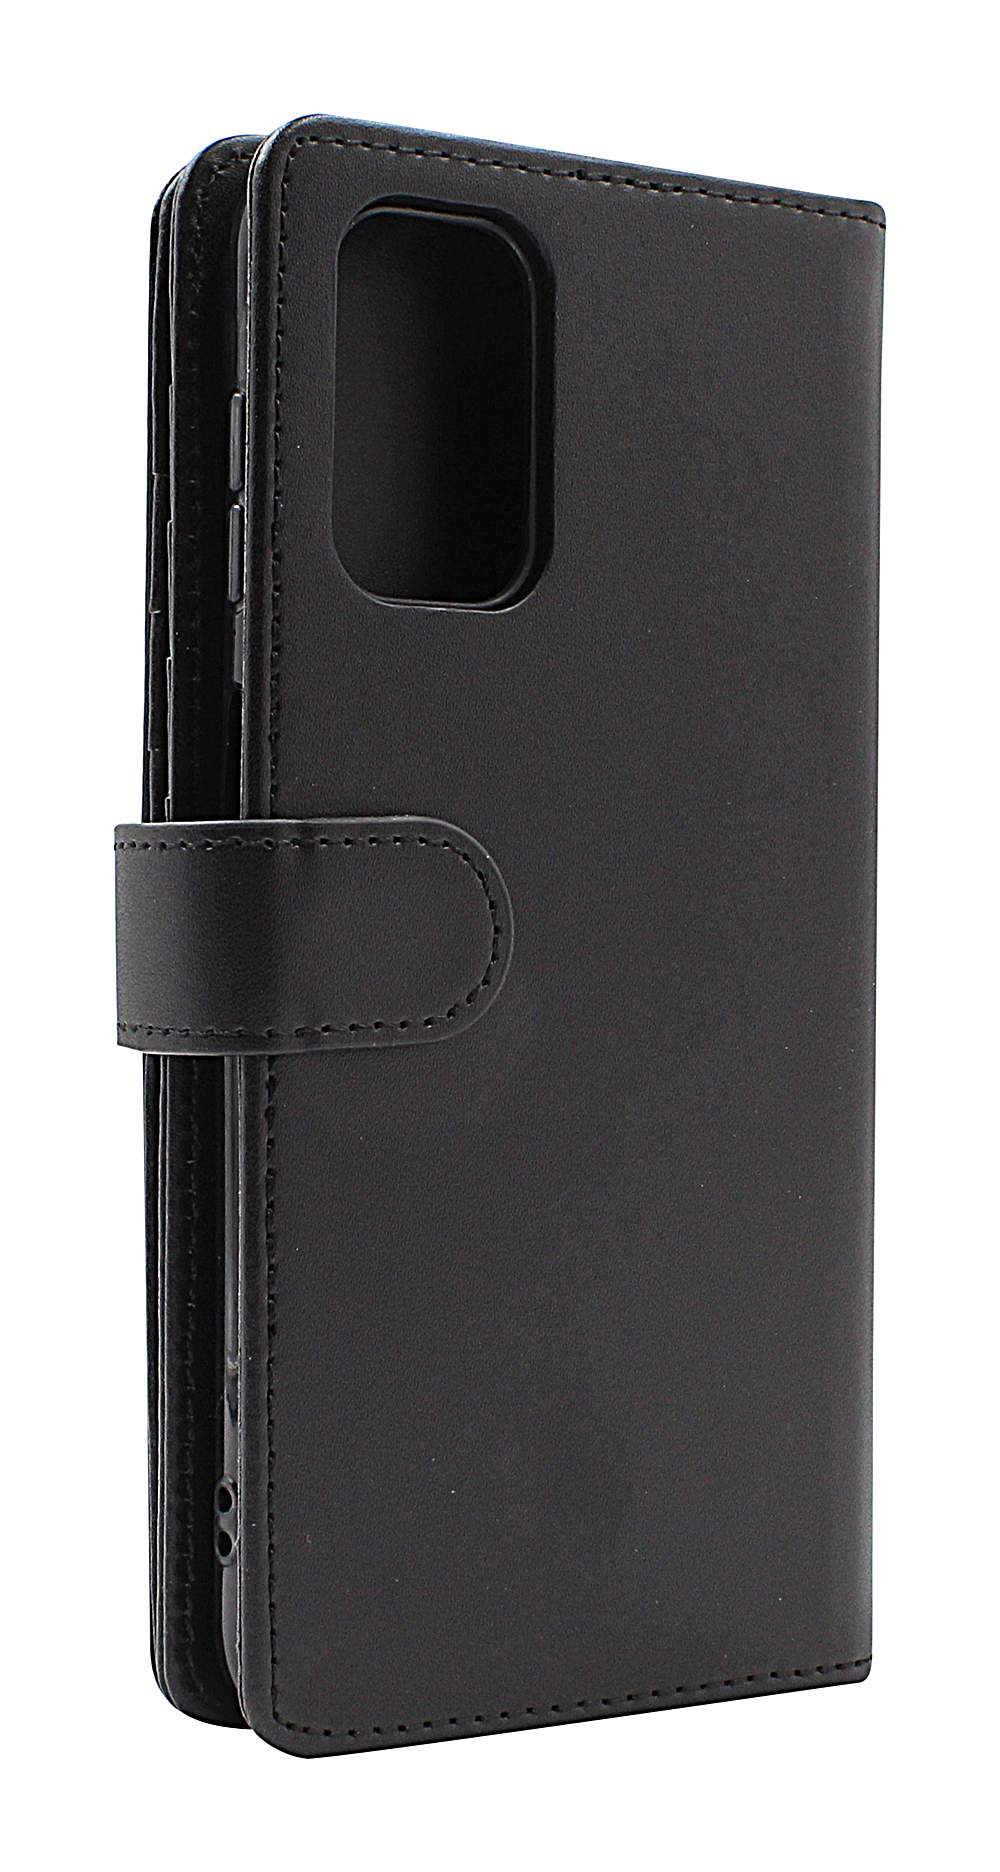 Skimblocker XL Wallet Samsung Galaxy A13 (A135F/DS)